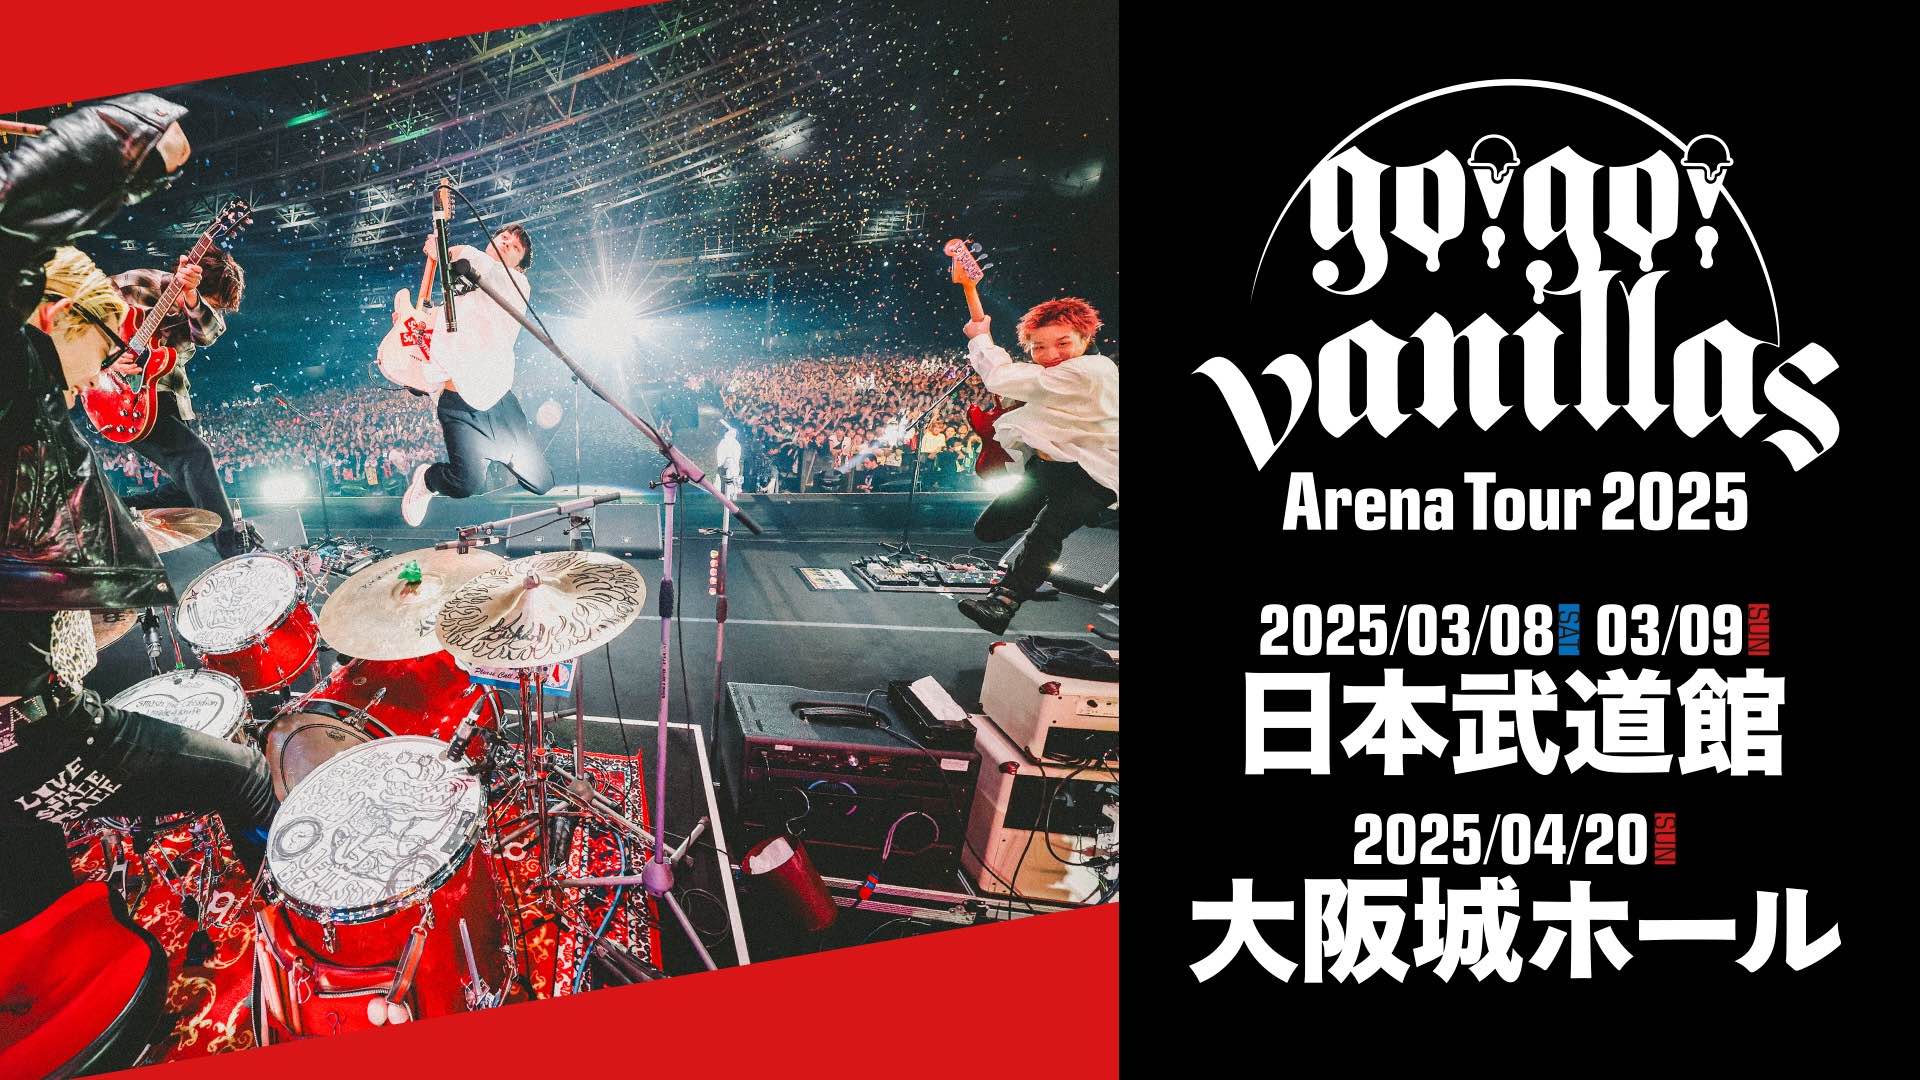 大阪城ホール<span class="live-title">「go!go!vanillas Arena Tour 2025」</span>